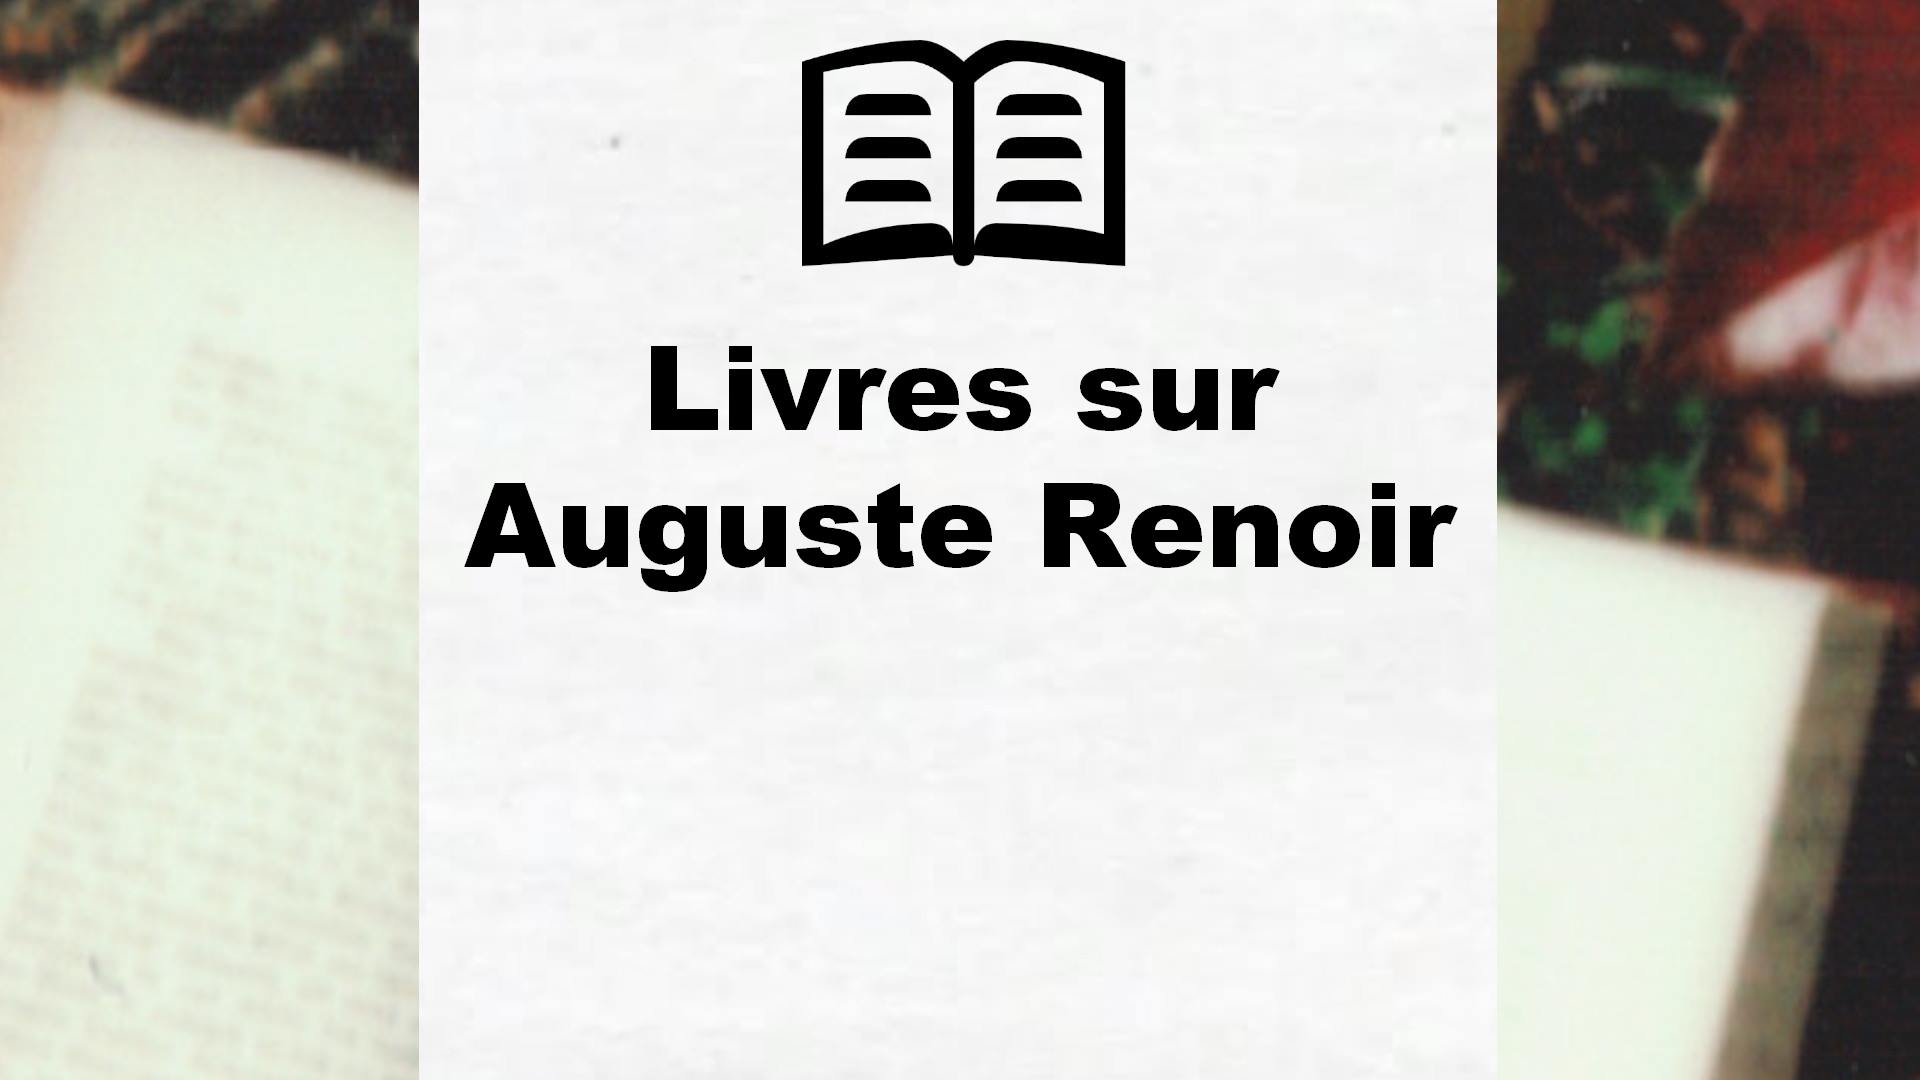 Livres sur Auguste Renoir